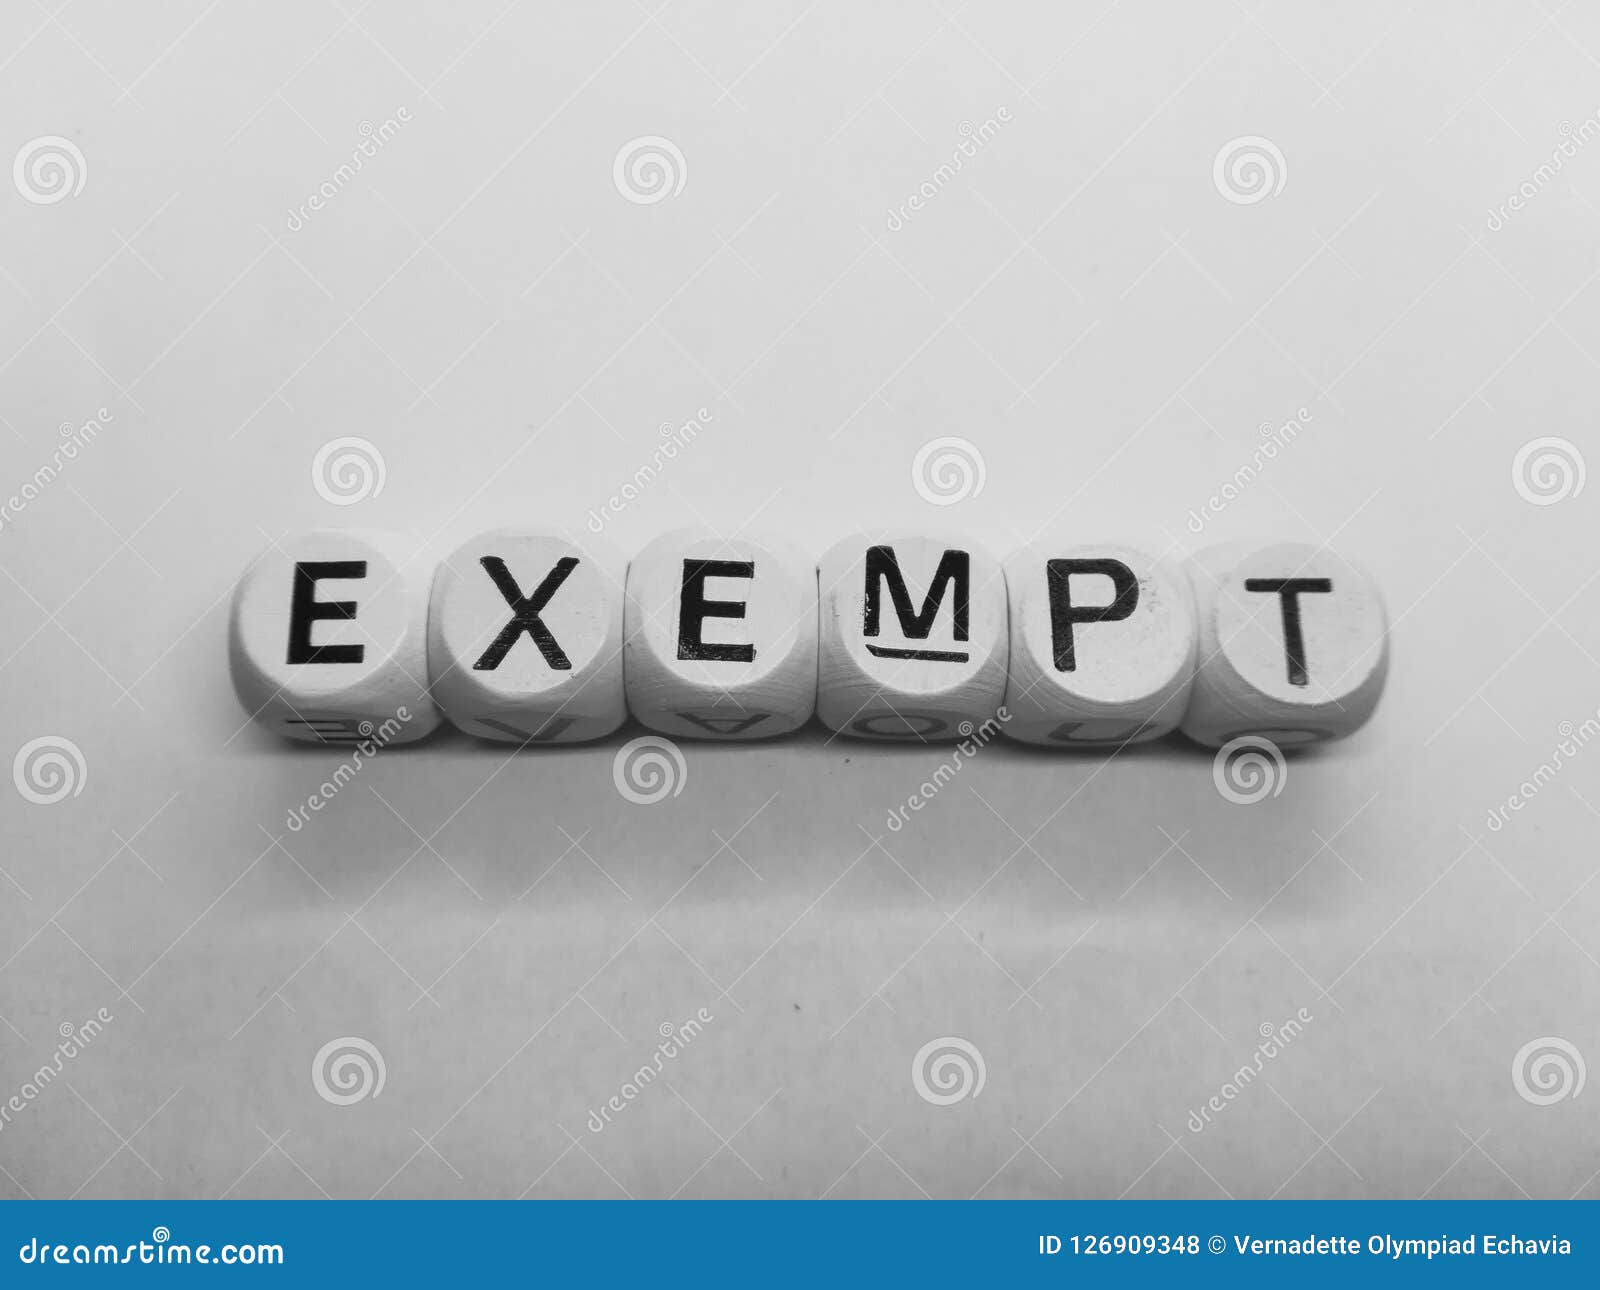 word exempt spelled in dice